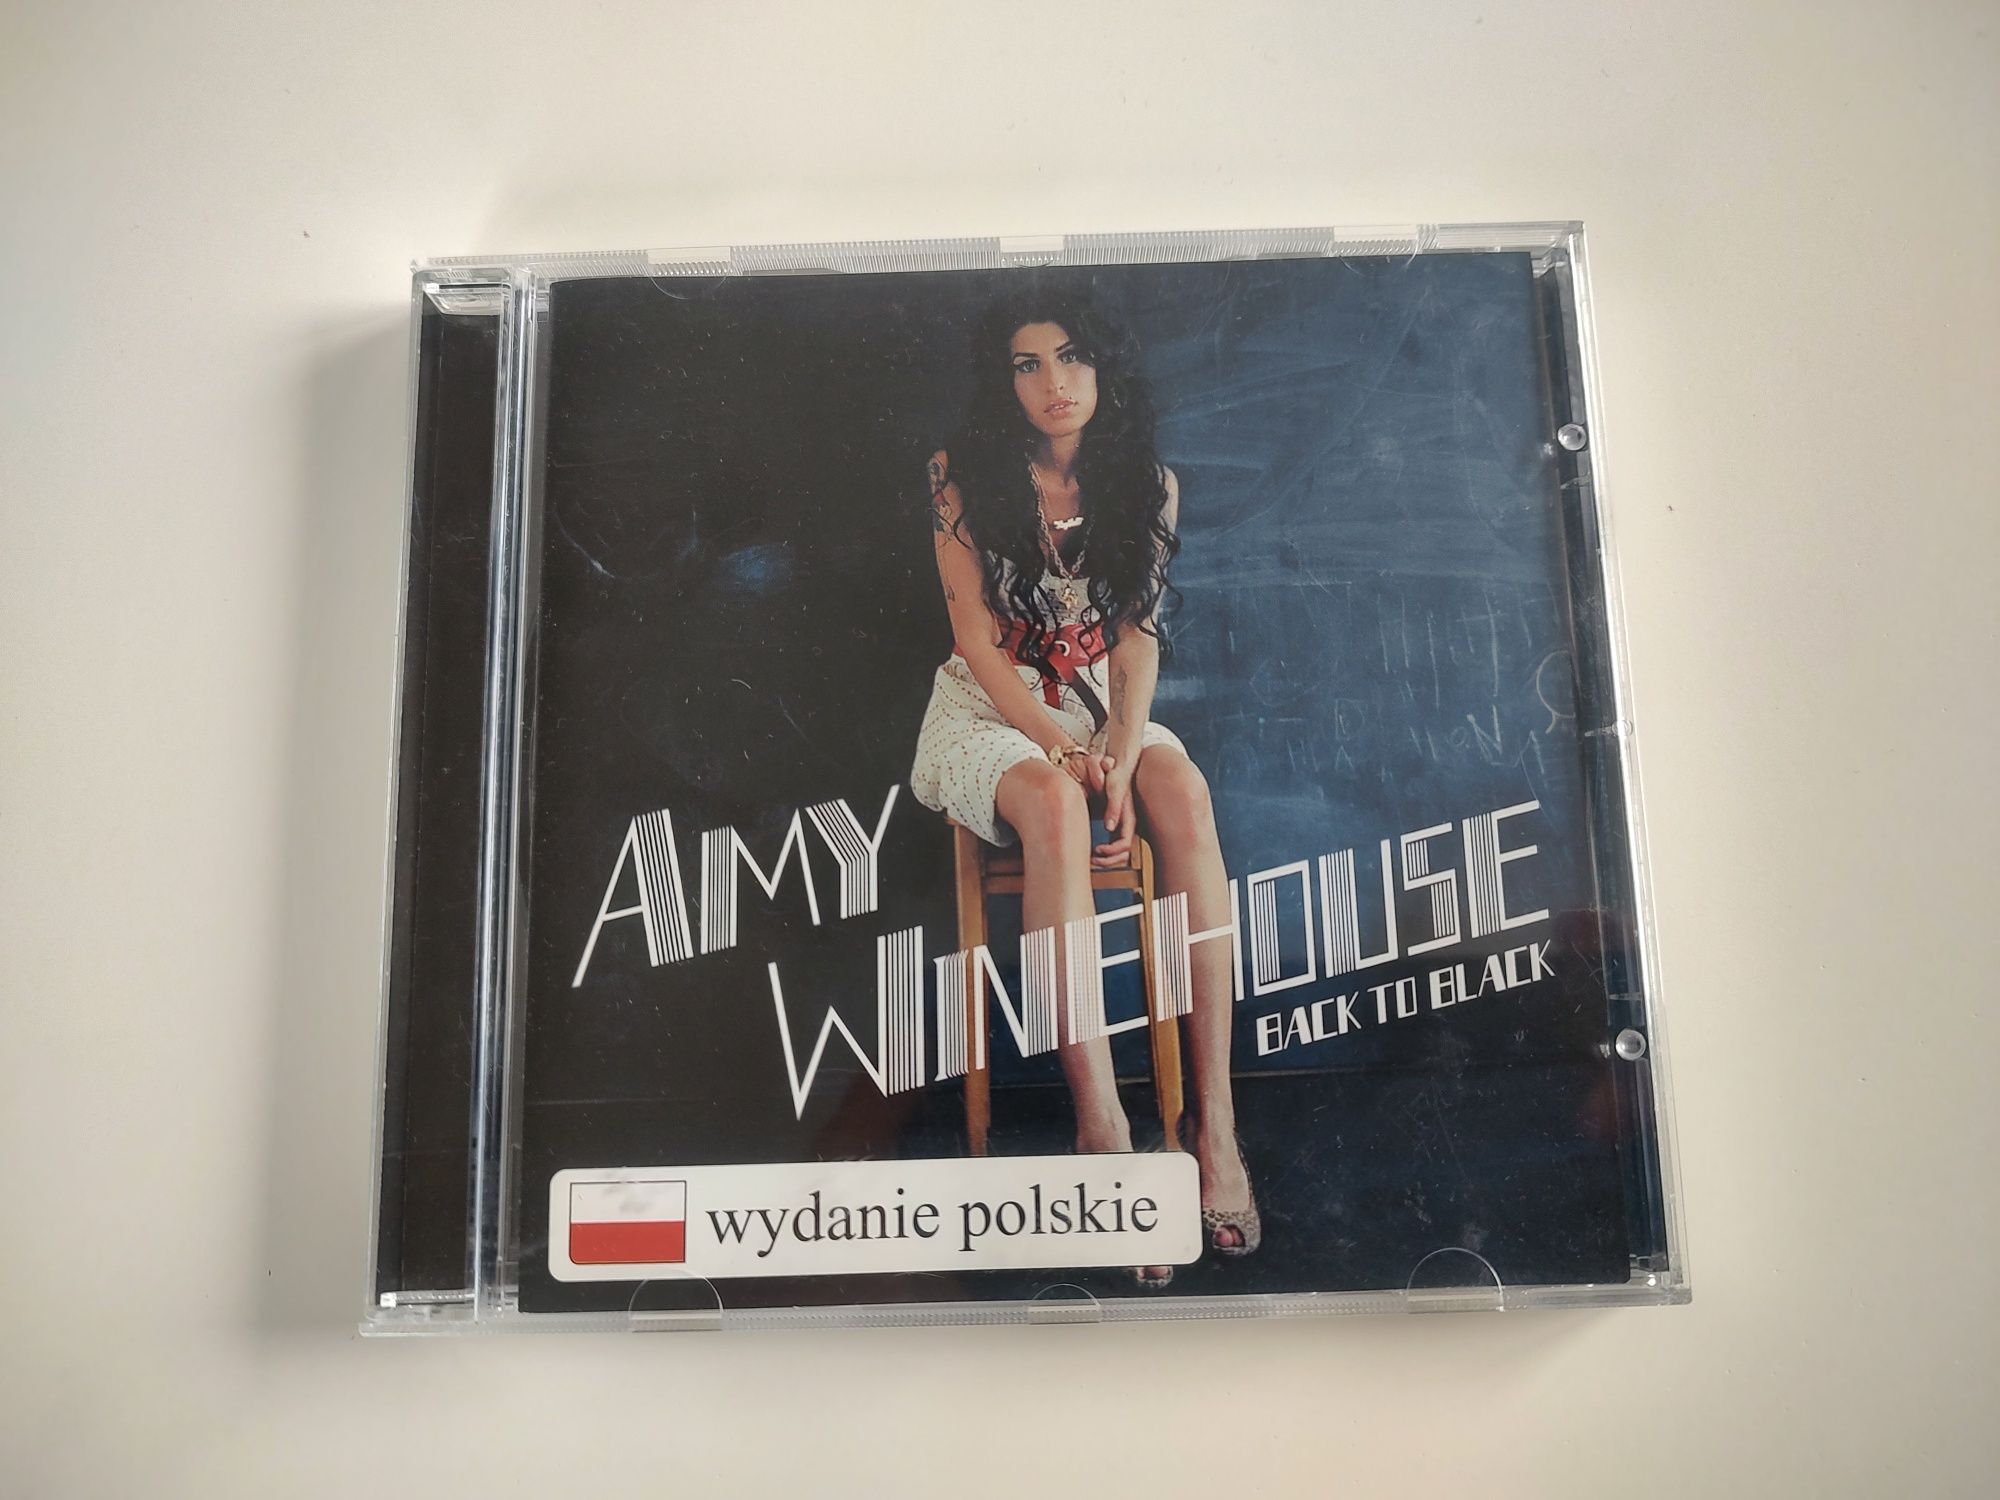 Amy Winehouse, Back To Black (polskie wydanie) płyta CD, wydanie 2006